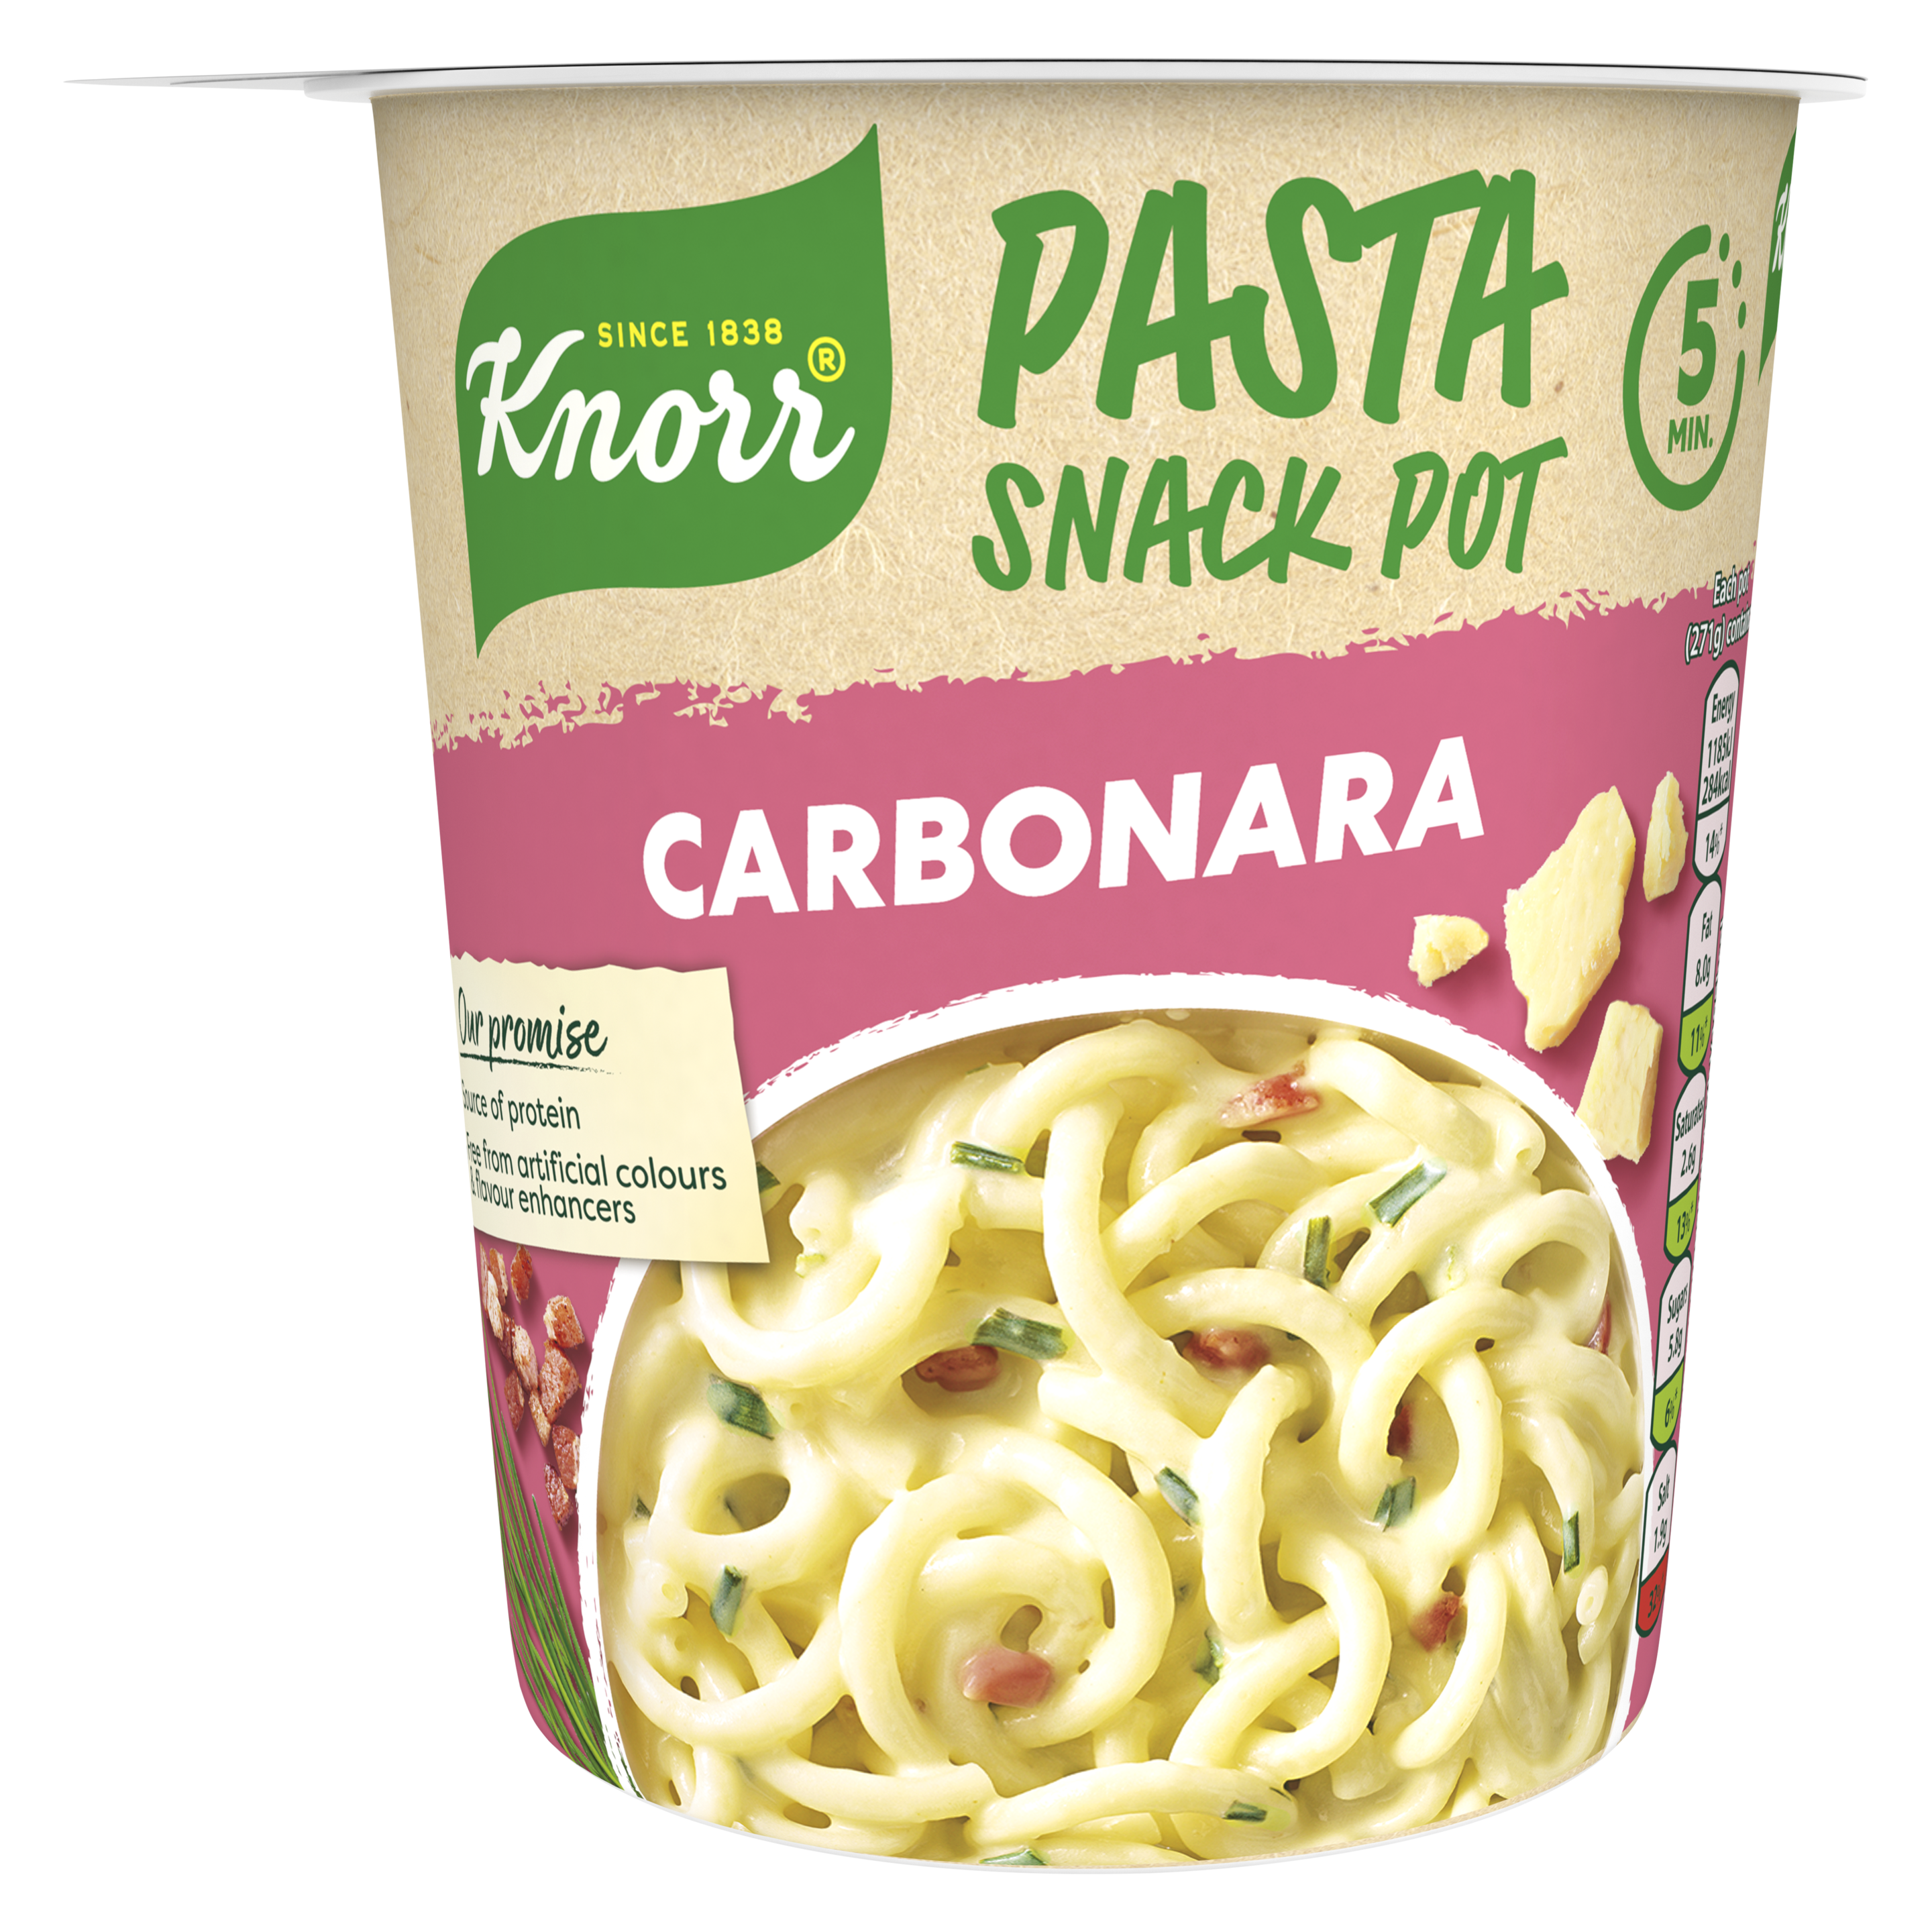 Knorr Carbonara